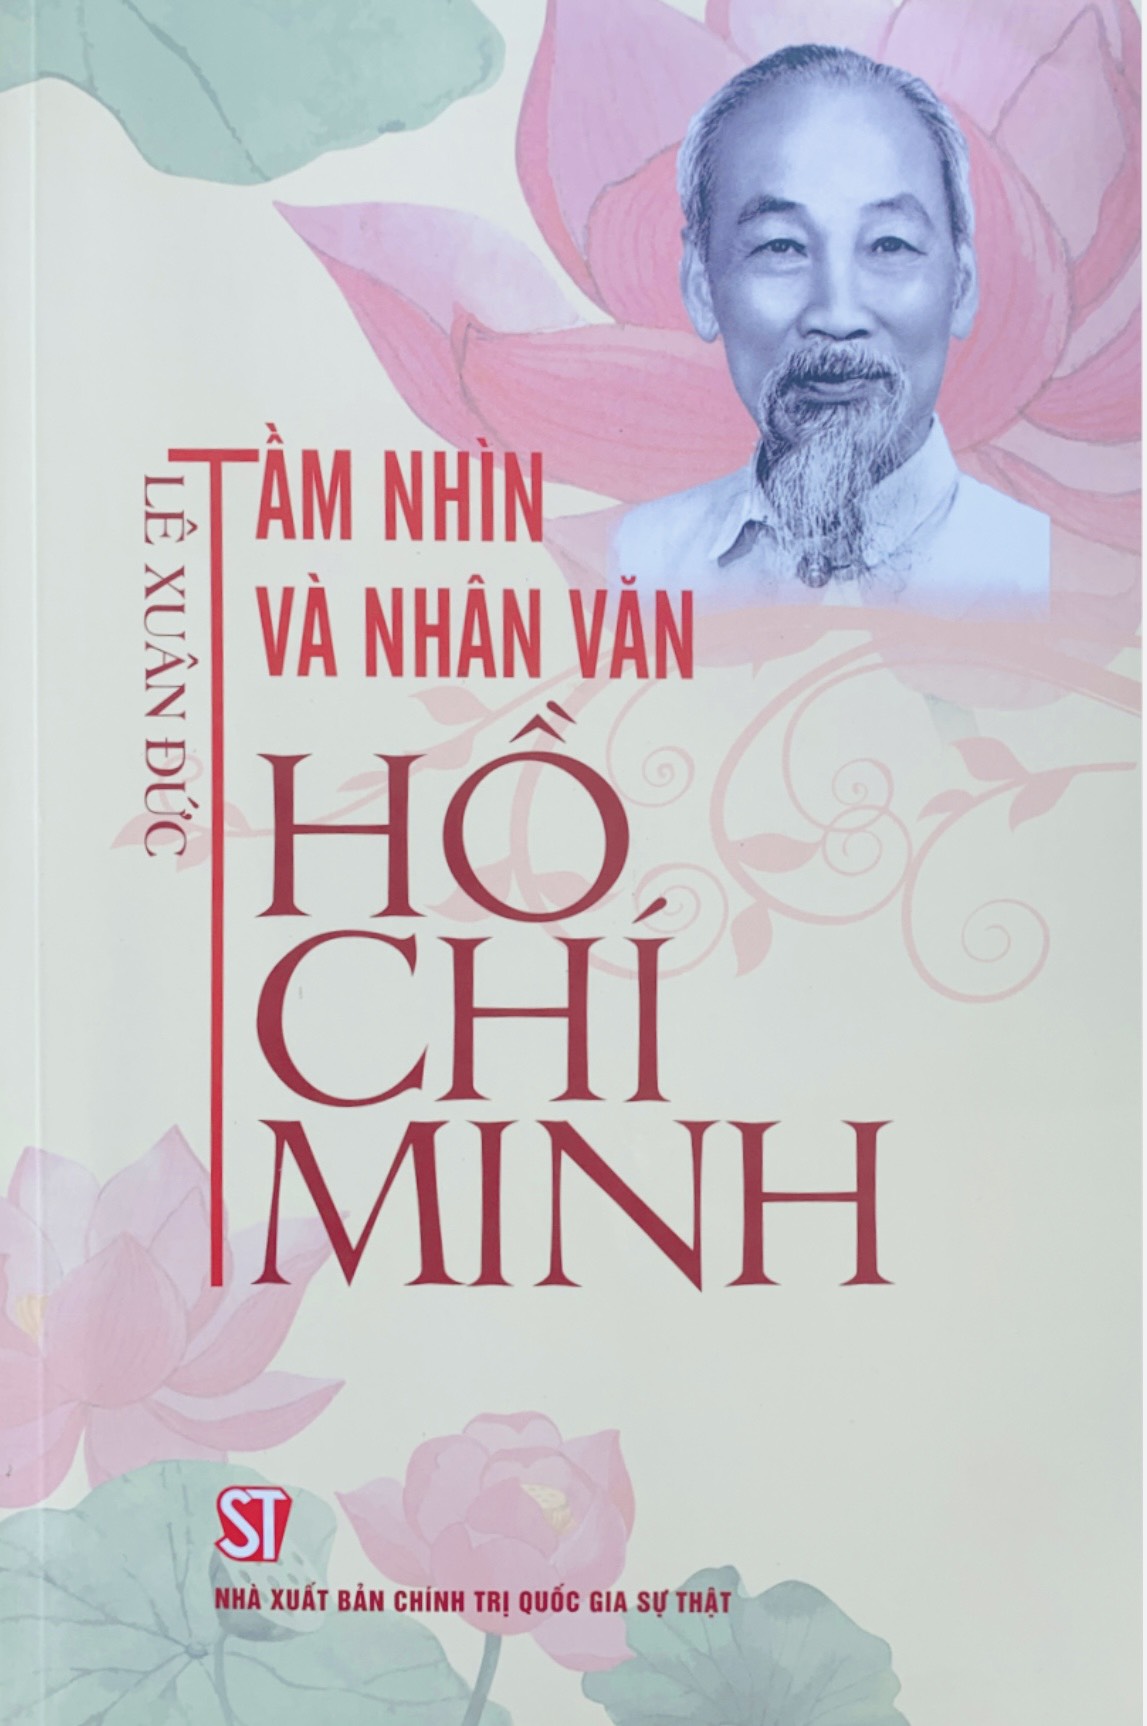 Tầm nhìn và nhân văn Hồ Chí Minh